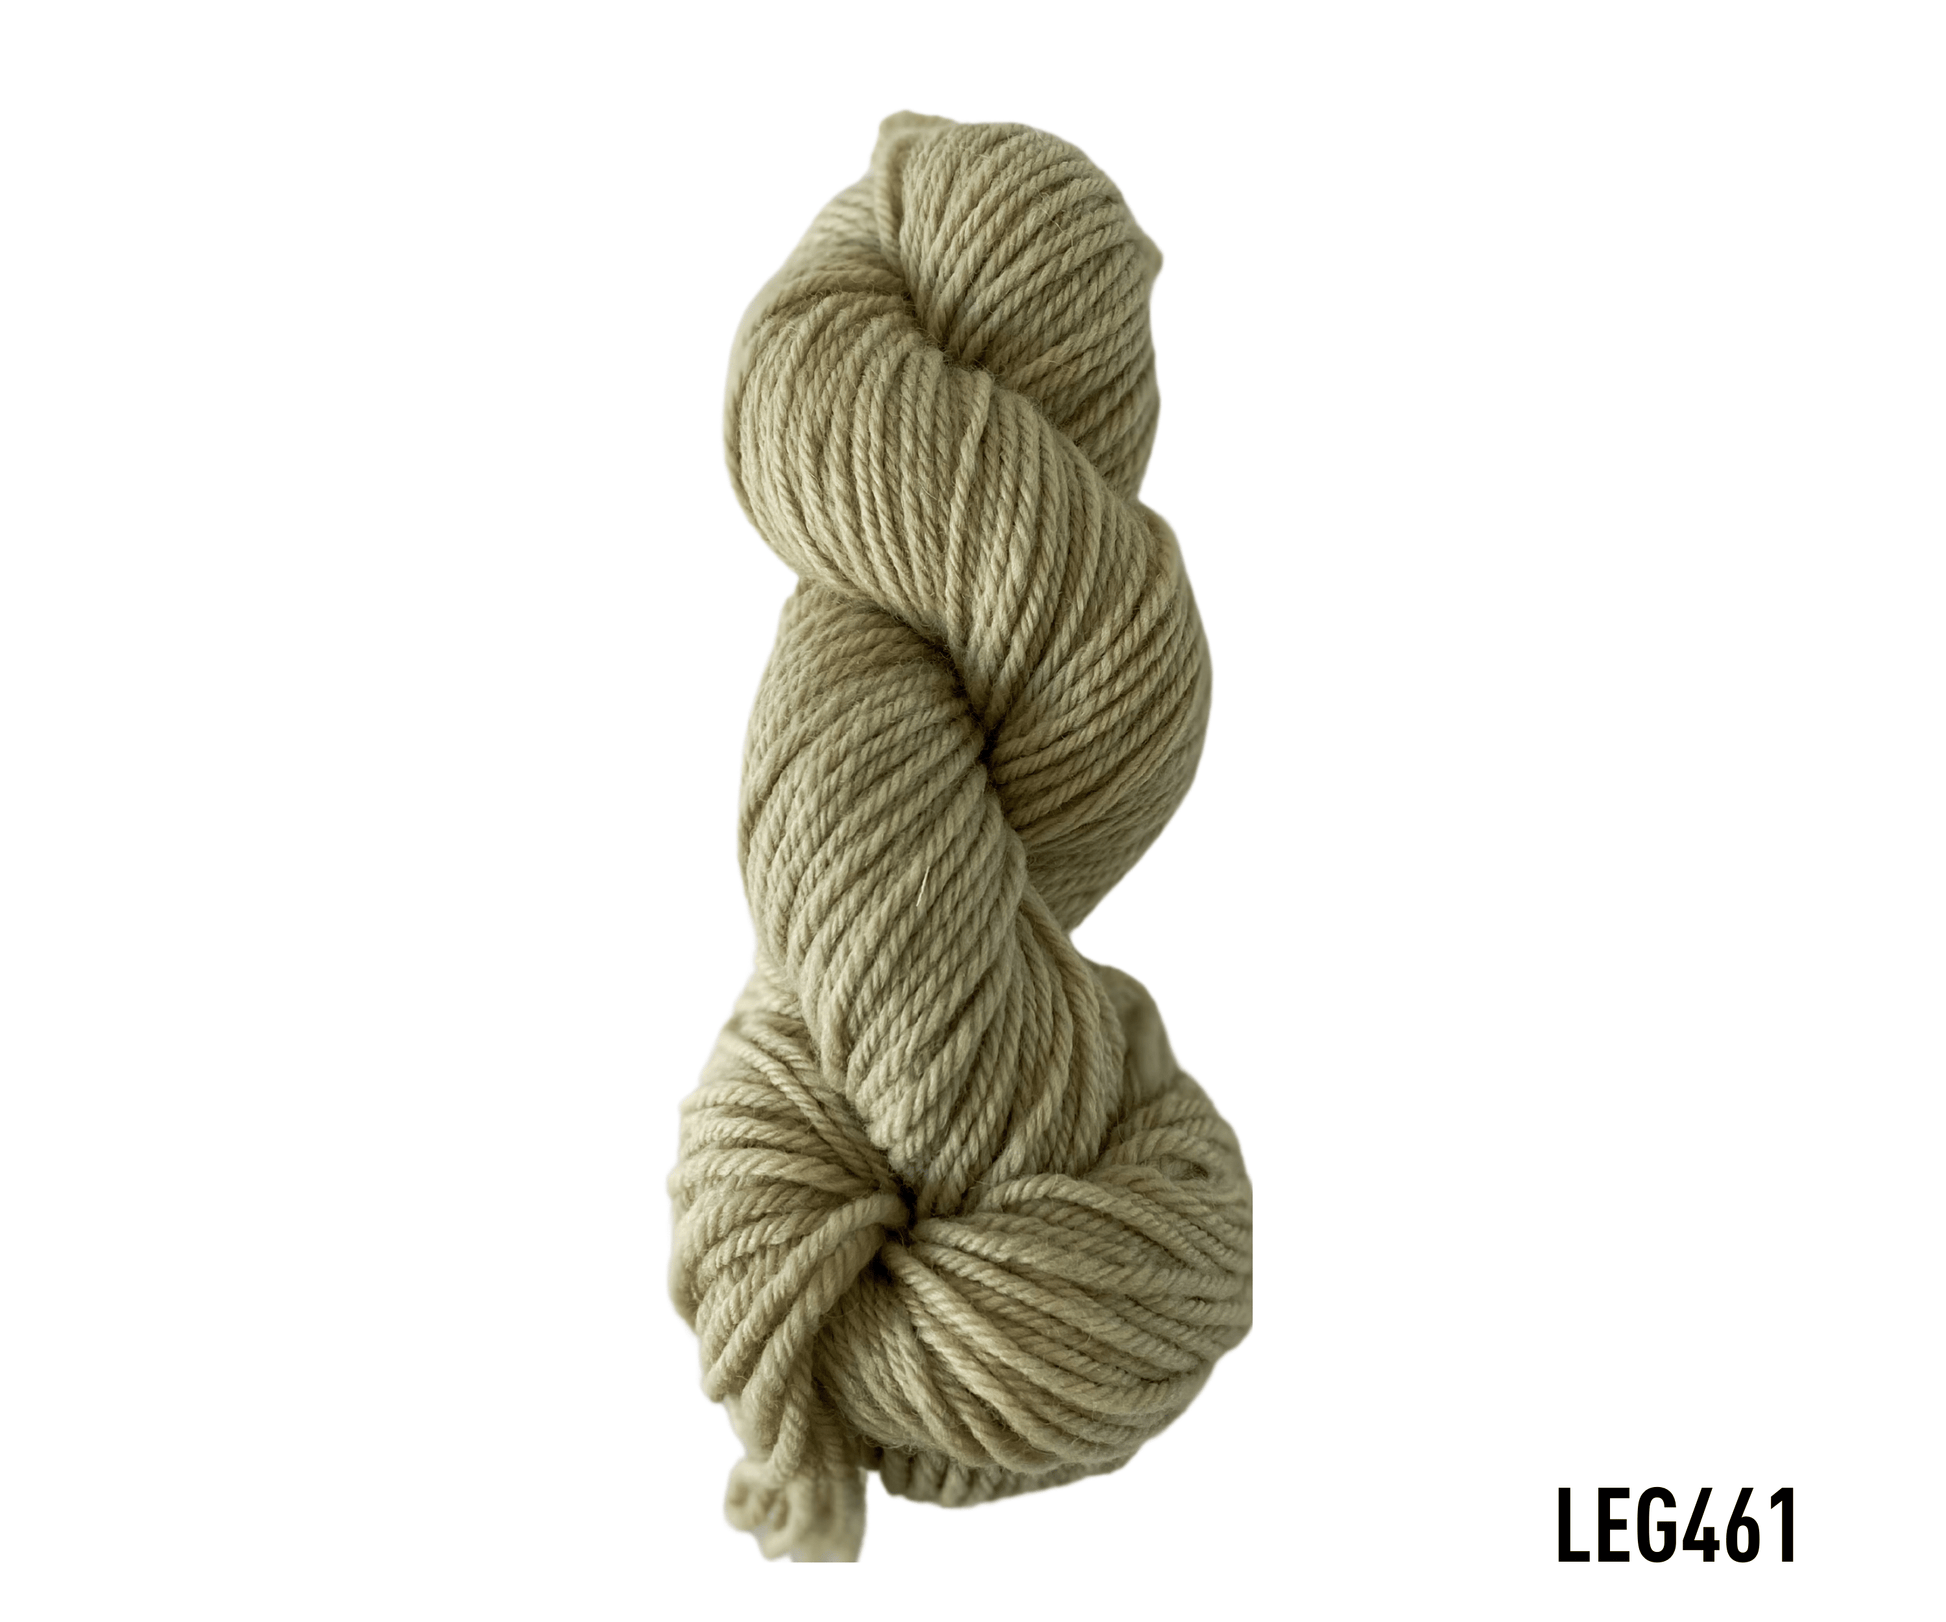 lanabel LANA NATURAL GRUESA LEG461 lana natural gruesa Butternut (lana natural gruesa)